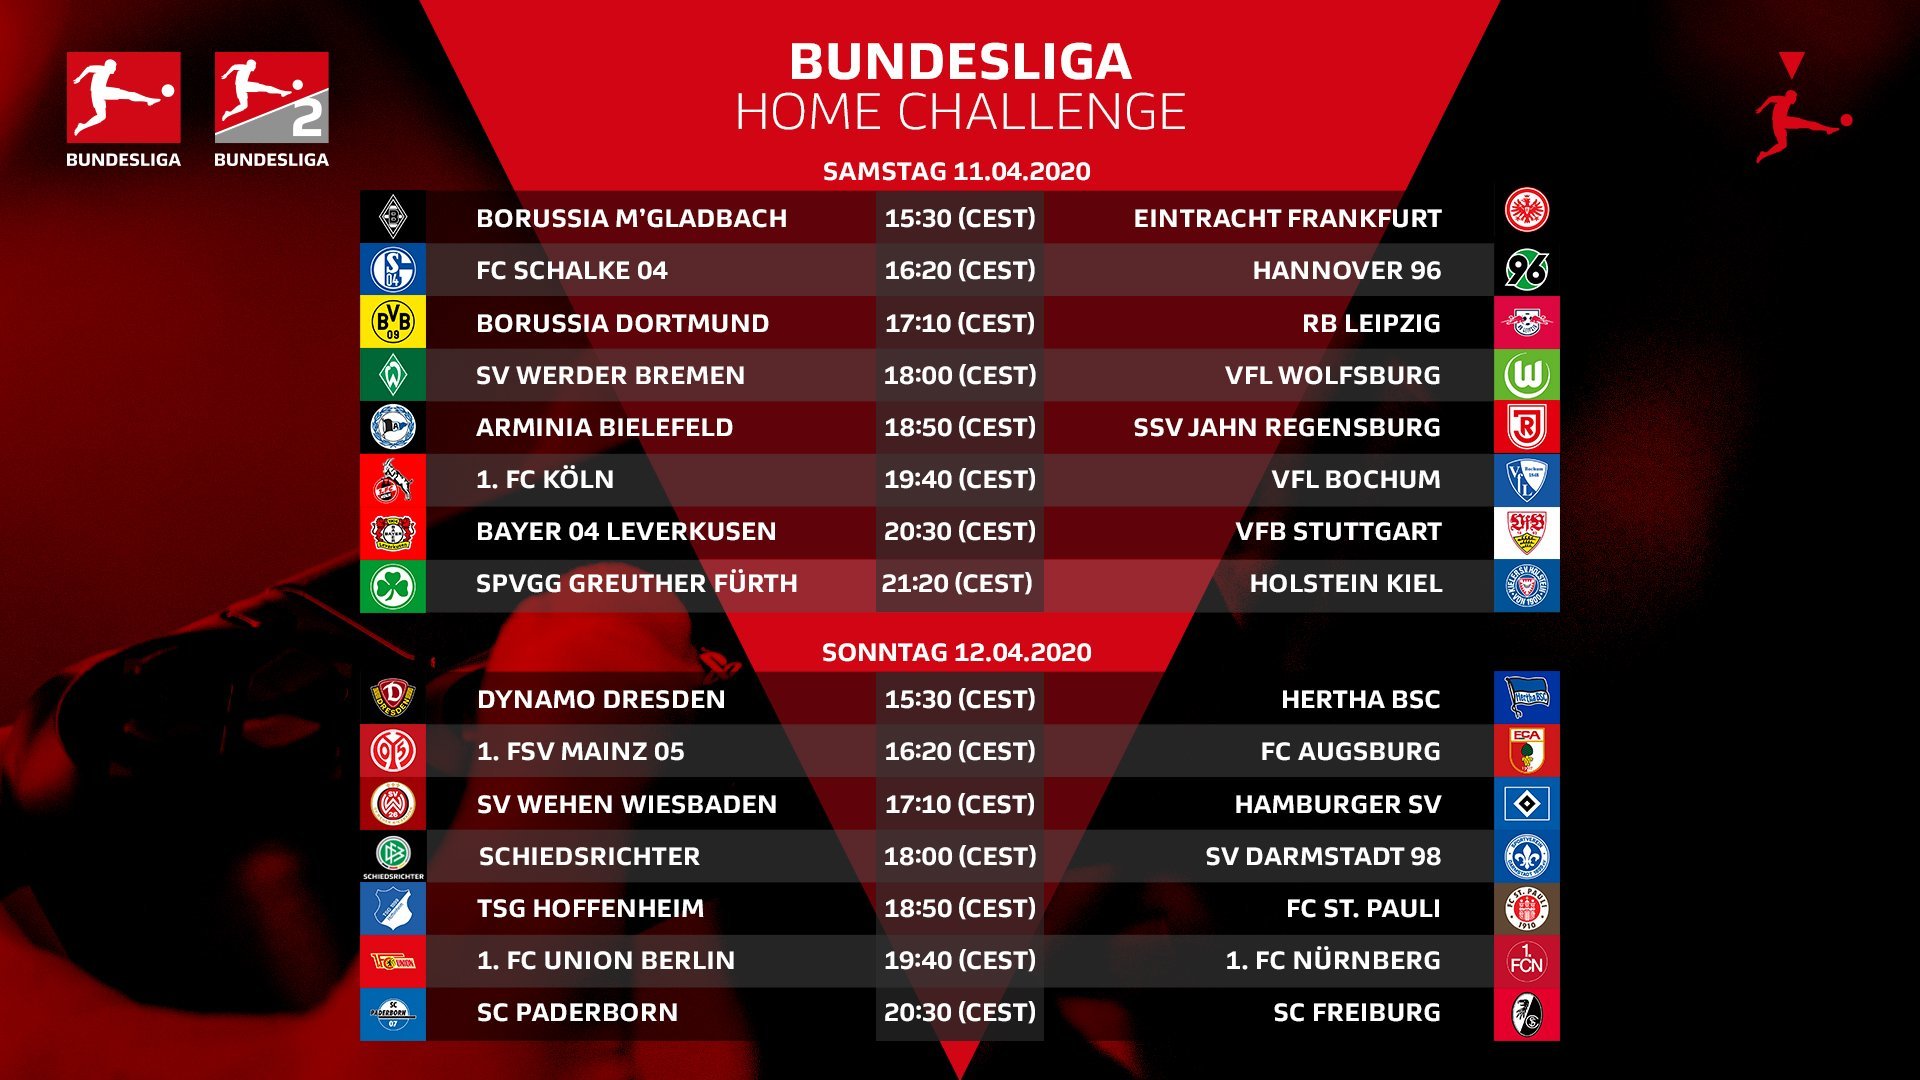 Киберфутбол. FIFA 20. Бундеслига. #BundesligaHomeChallenge. 3-я игровая неделя. Анонс и прогноз - изображение 1